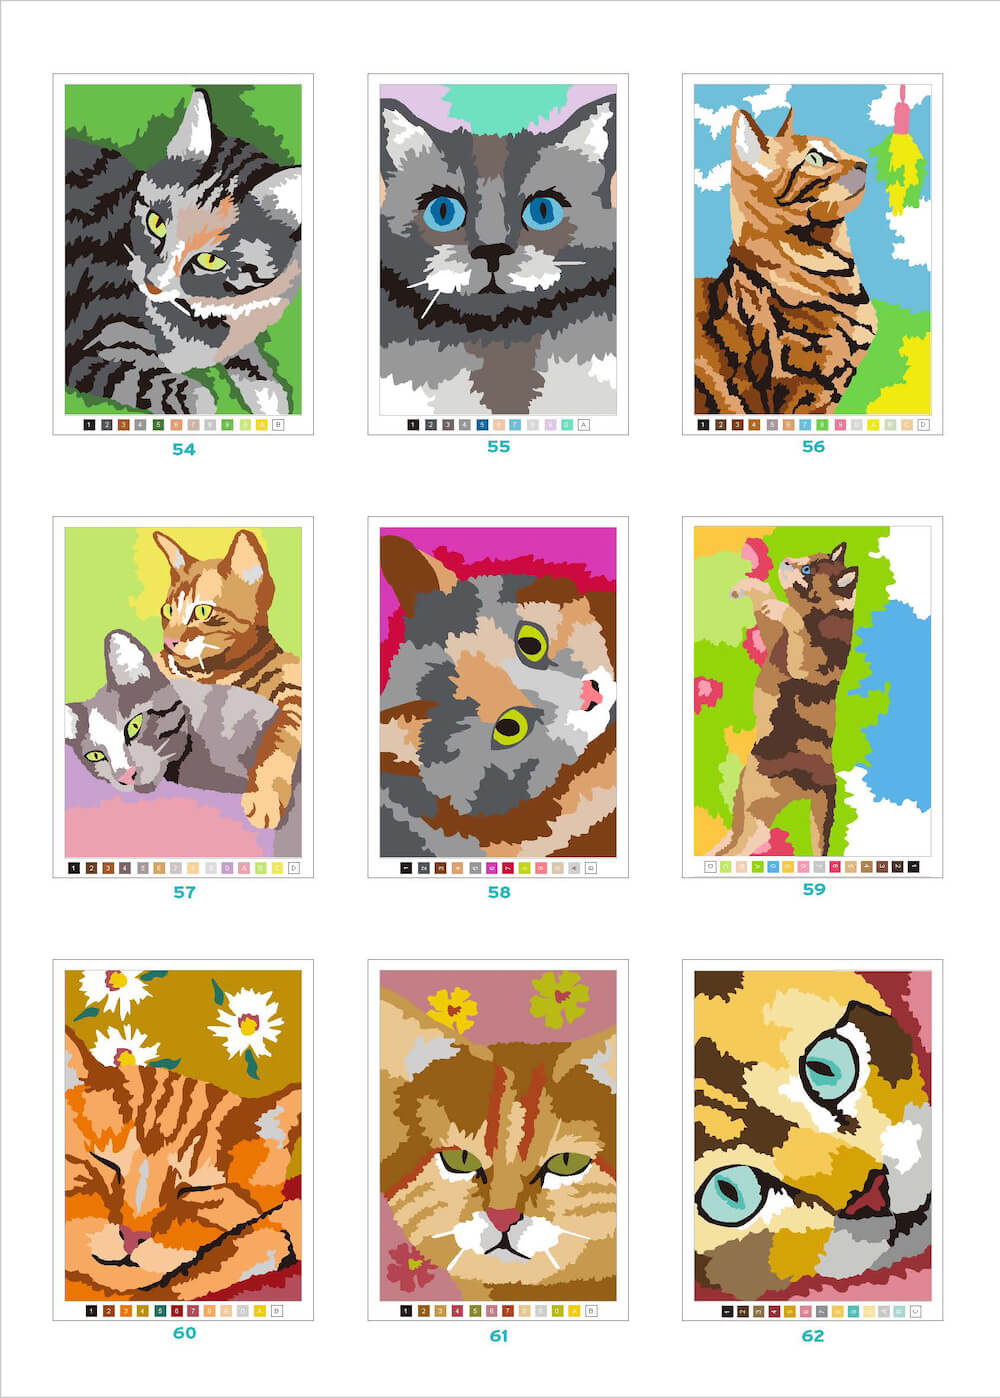 「100パズルぬりえ　9.キャット・ワールド」に収録されている猫のイラスト例1